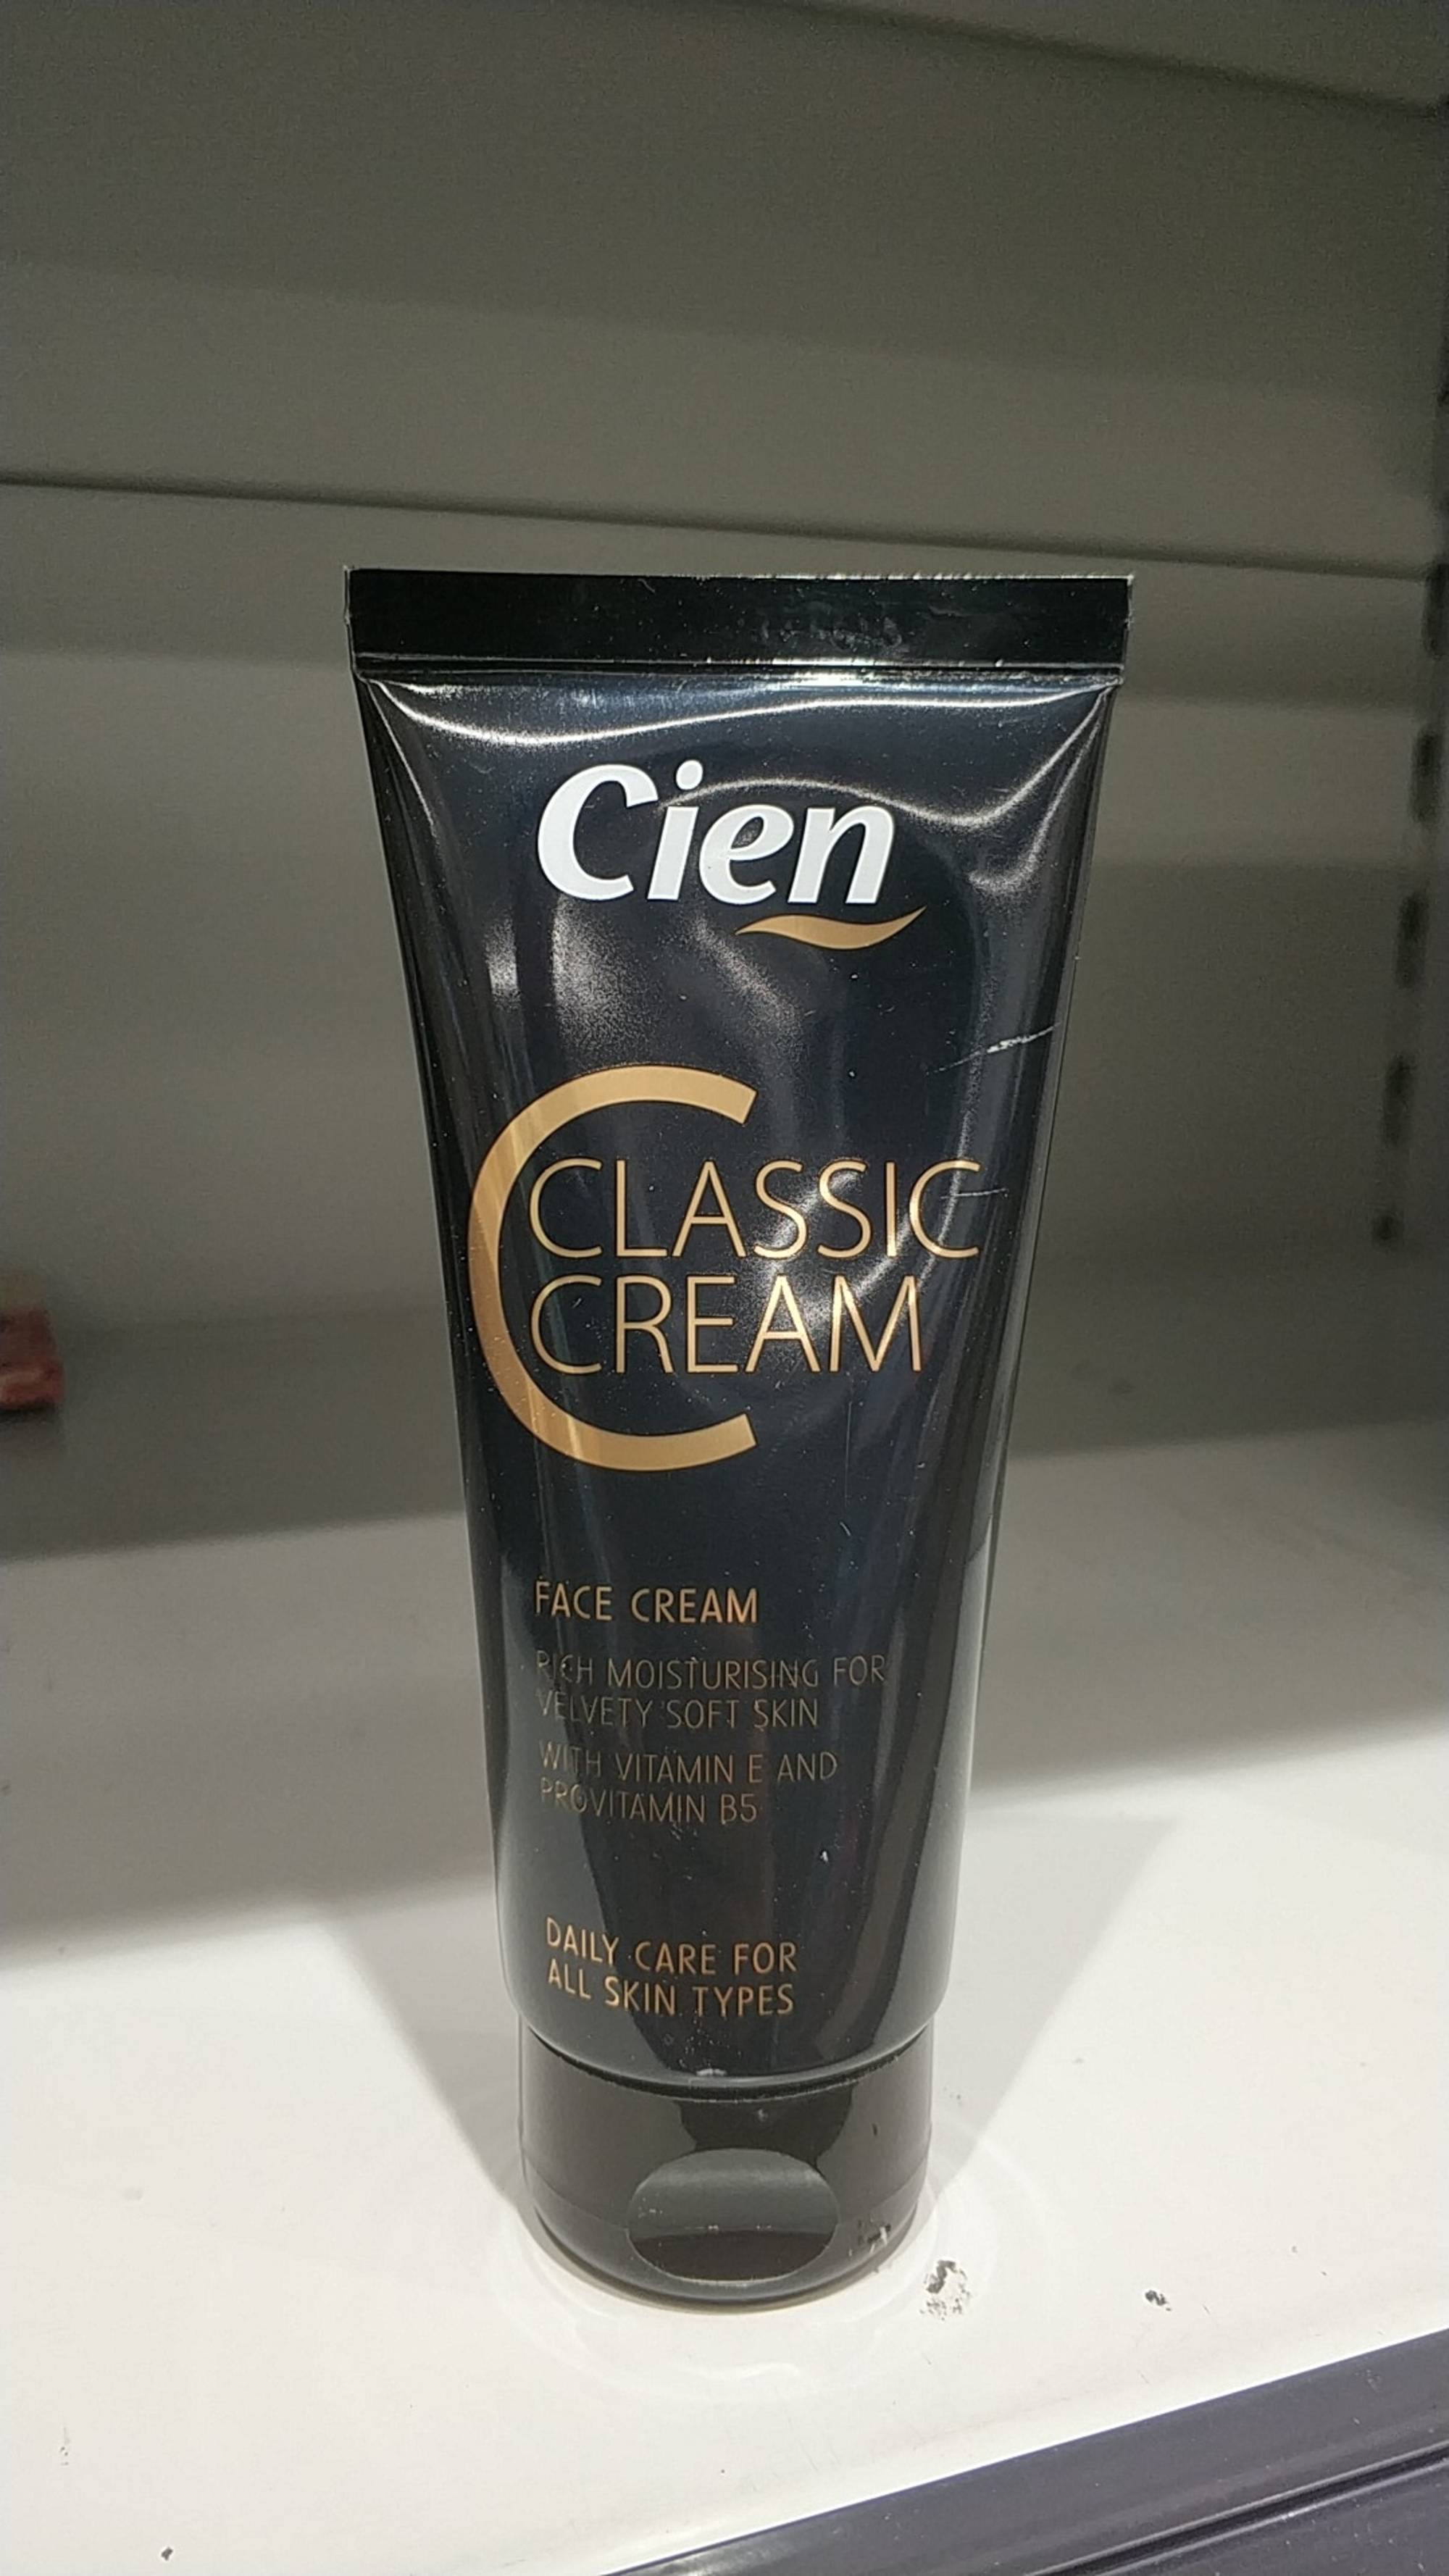 LIDL - Cien classic cream - Face cream